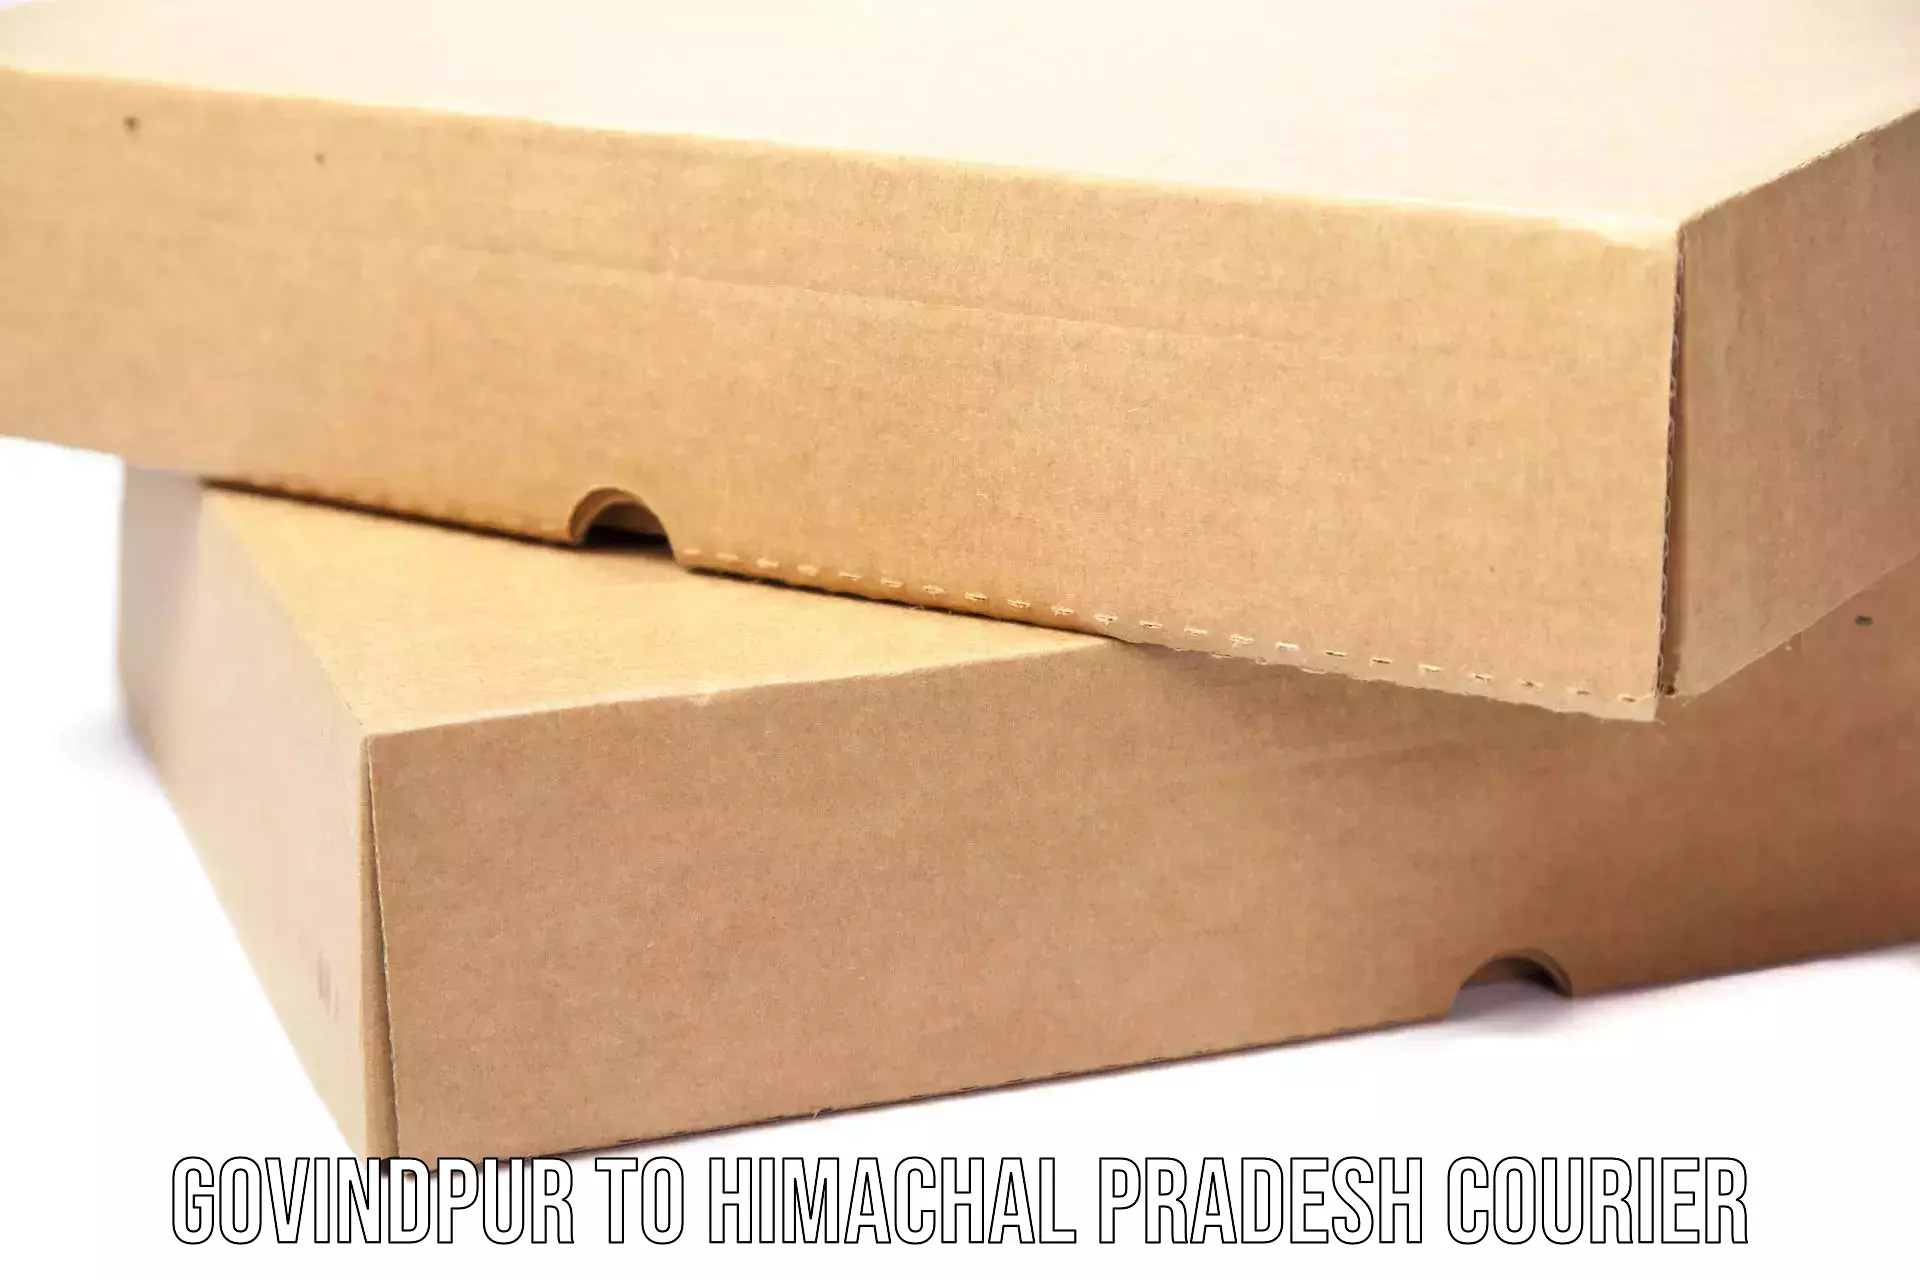 Special handling courier Govindpur to NIT Hamirpur